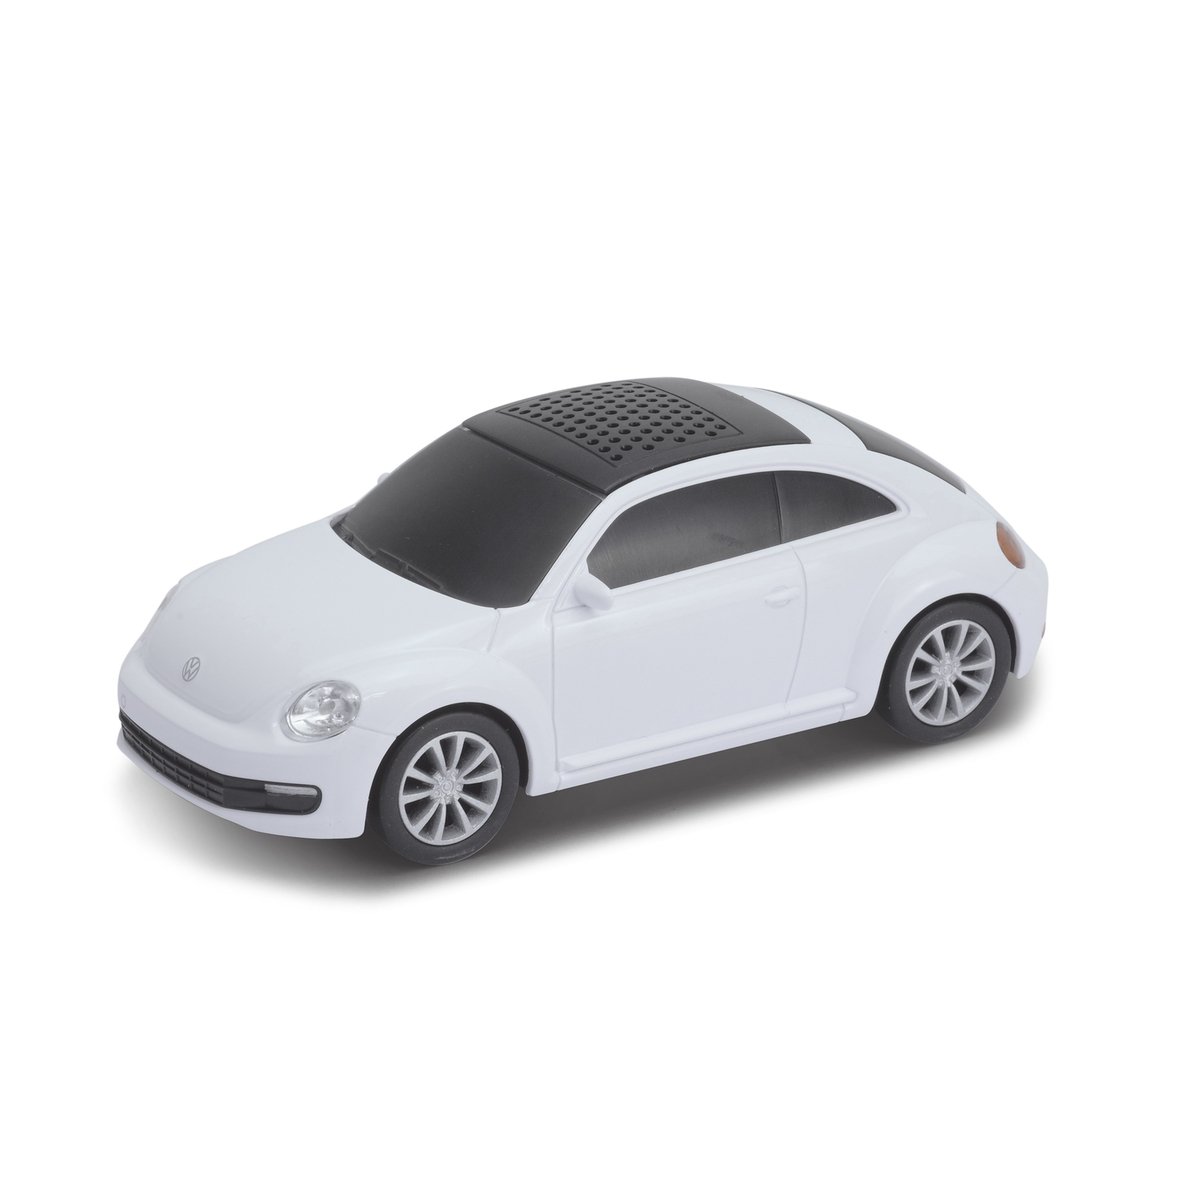 Haut-parleur avec technologie bluetooth® VW Beetle 1:36 blanc